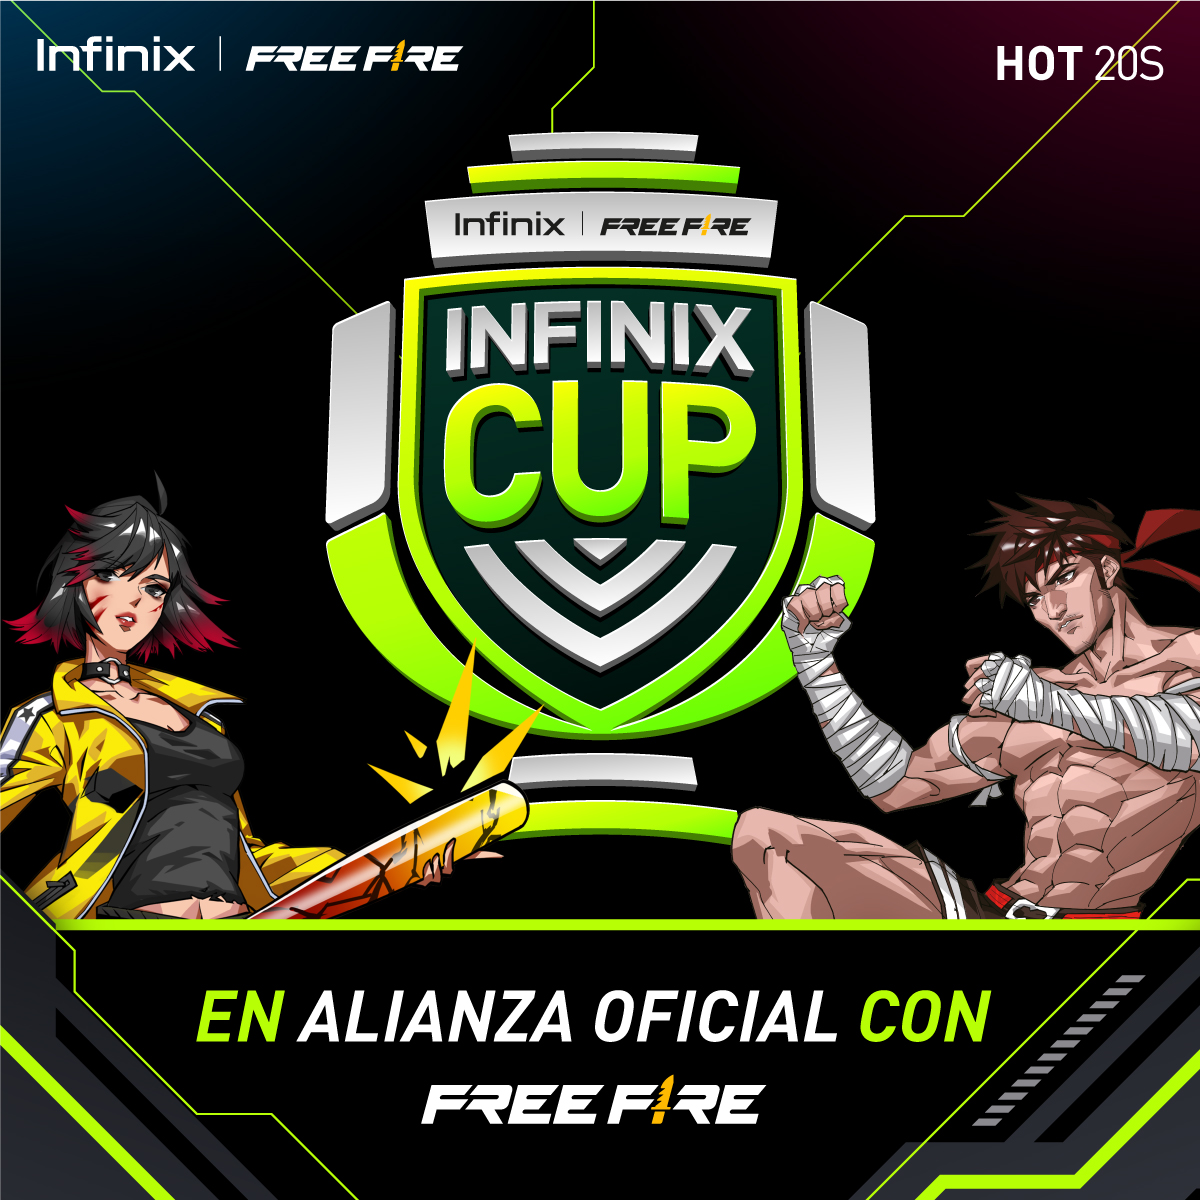 Infinix Cup x Free Fire llega a su final el 7 de enero